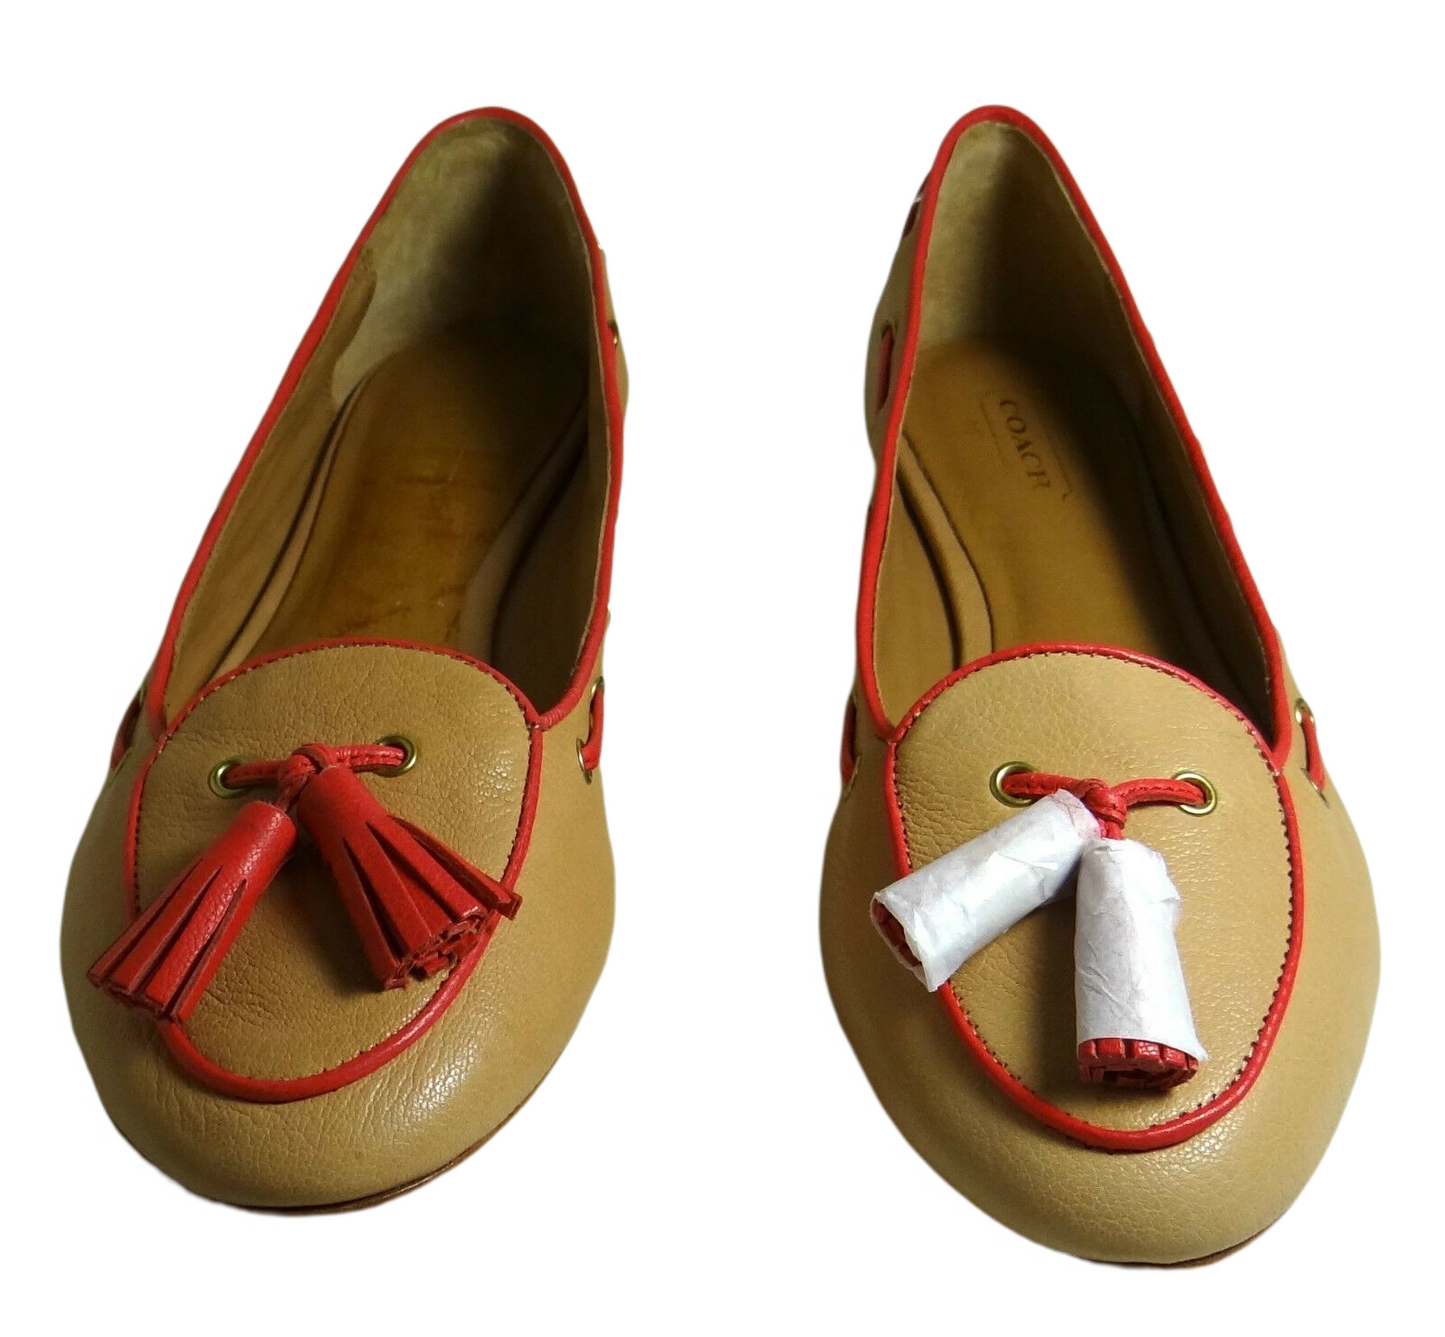 حذاء مسطح من الجلد البني الناعم من COACH Manika